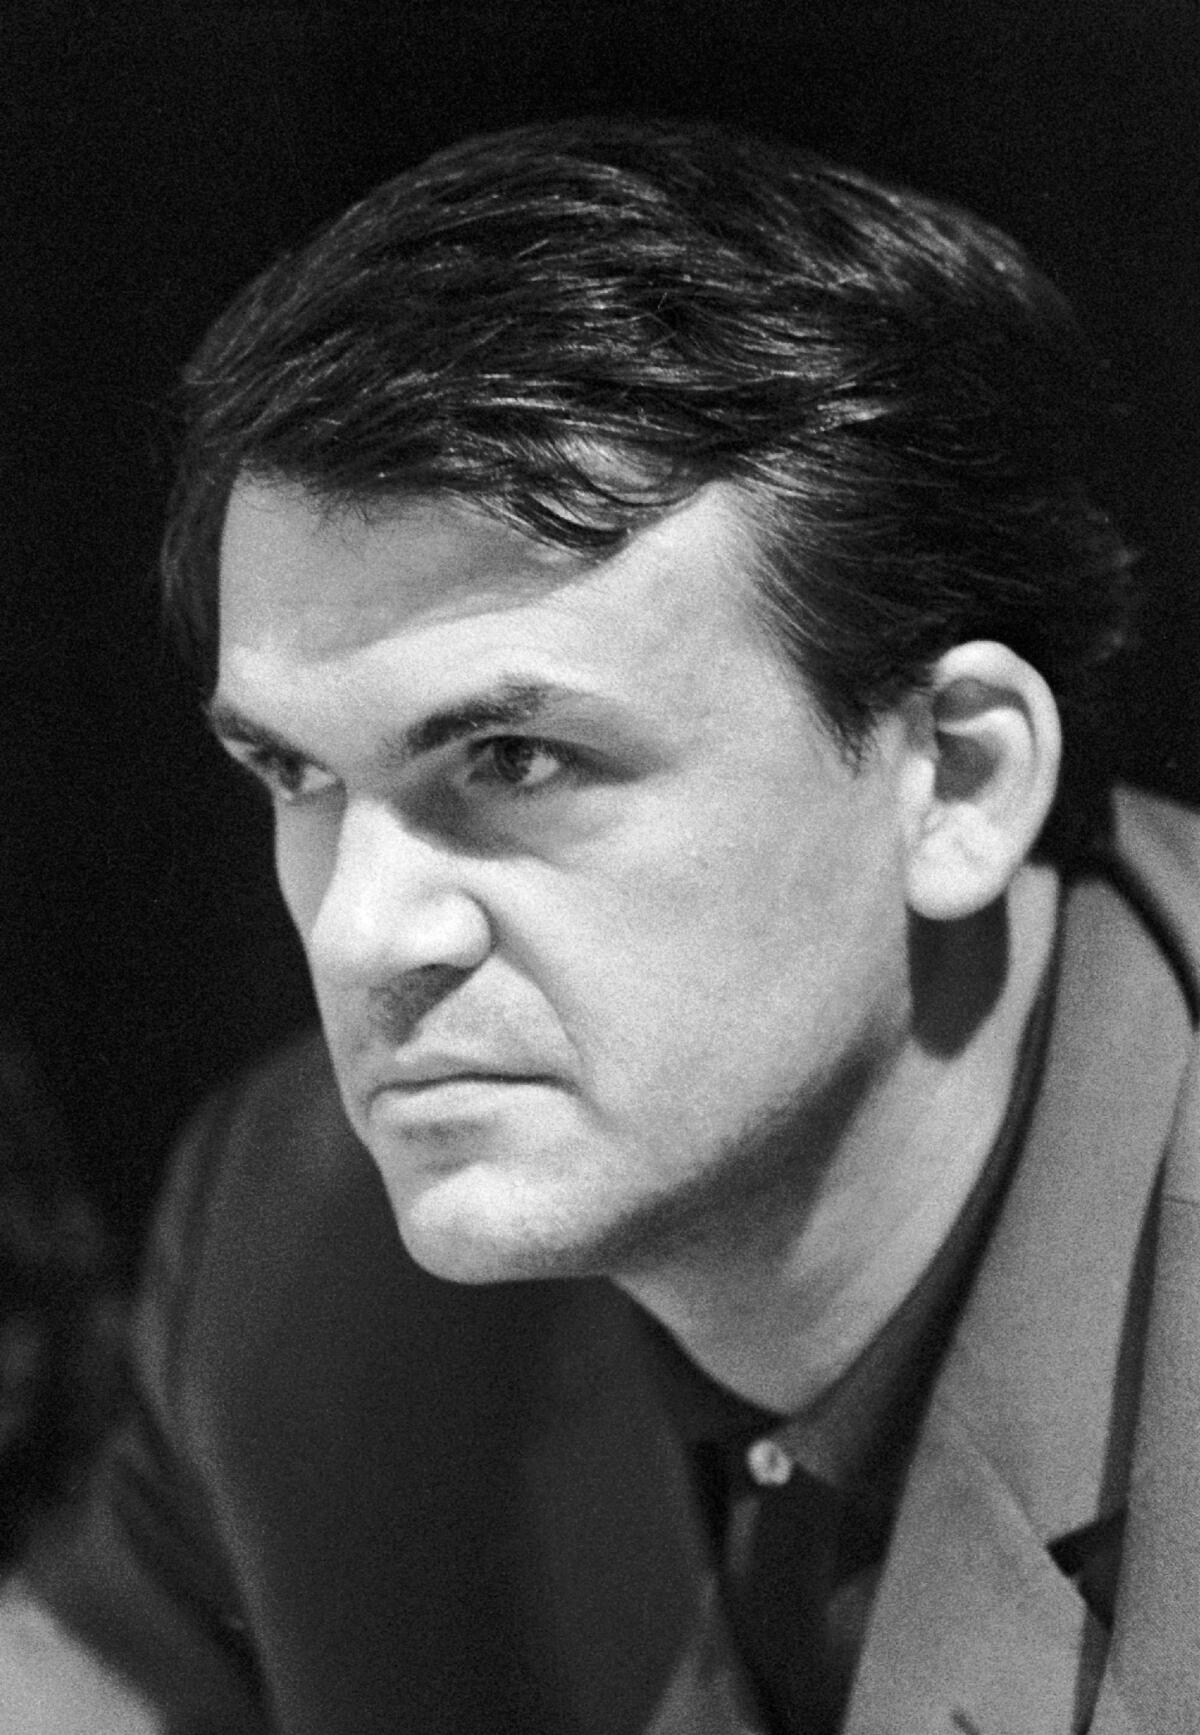 Milan Kundera dead: Czech novelist was 94 - Los Angeles Times